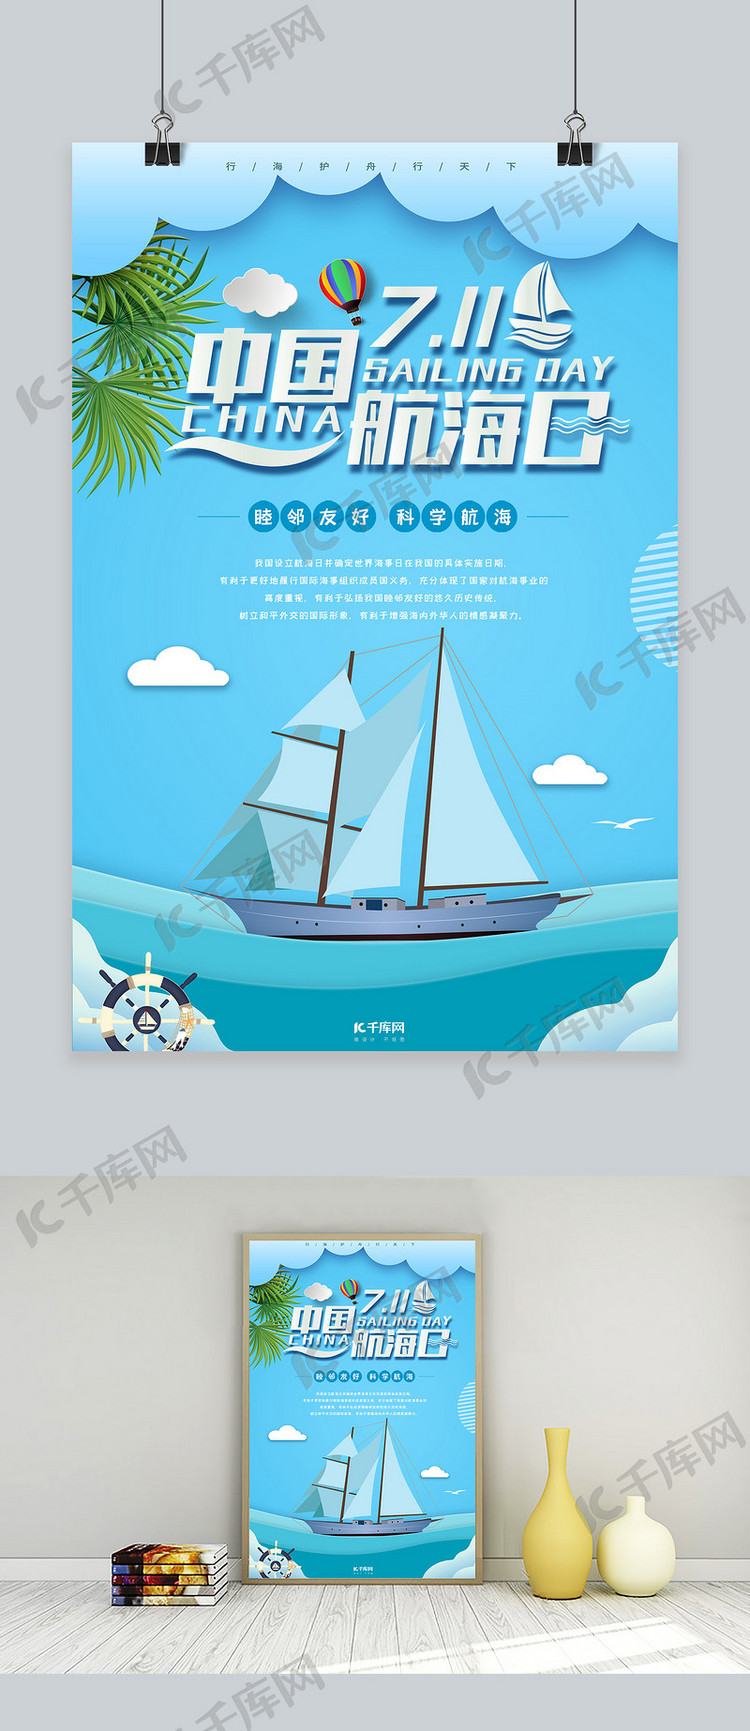 创意中国航海日公益宣传海报